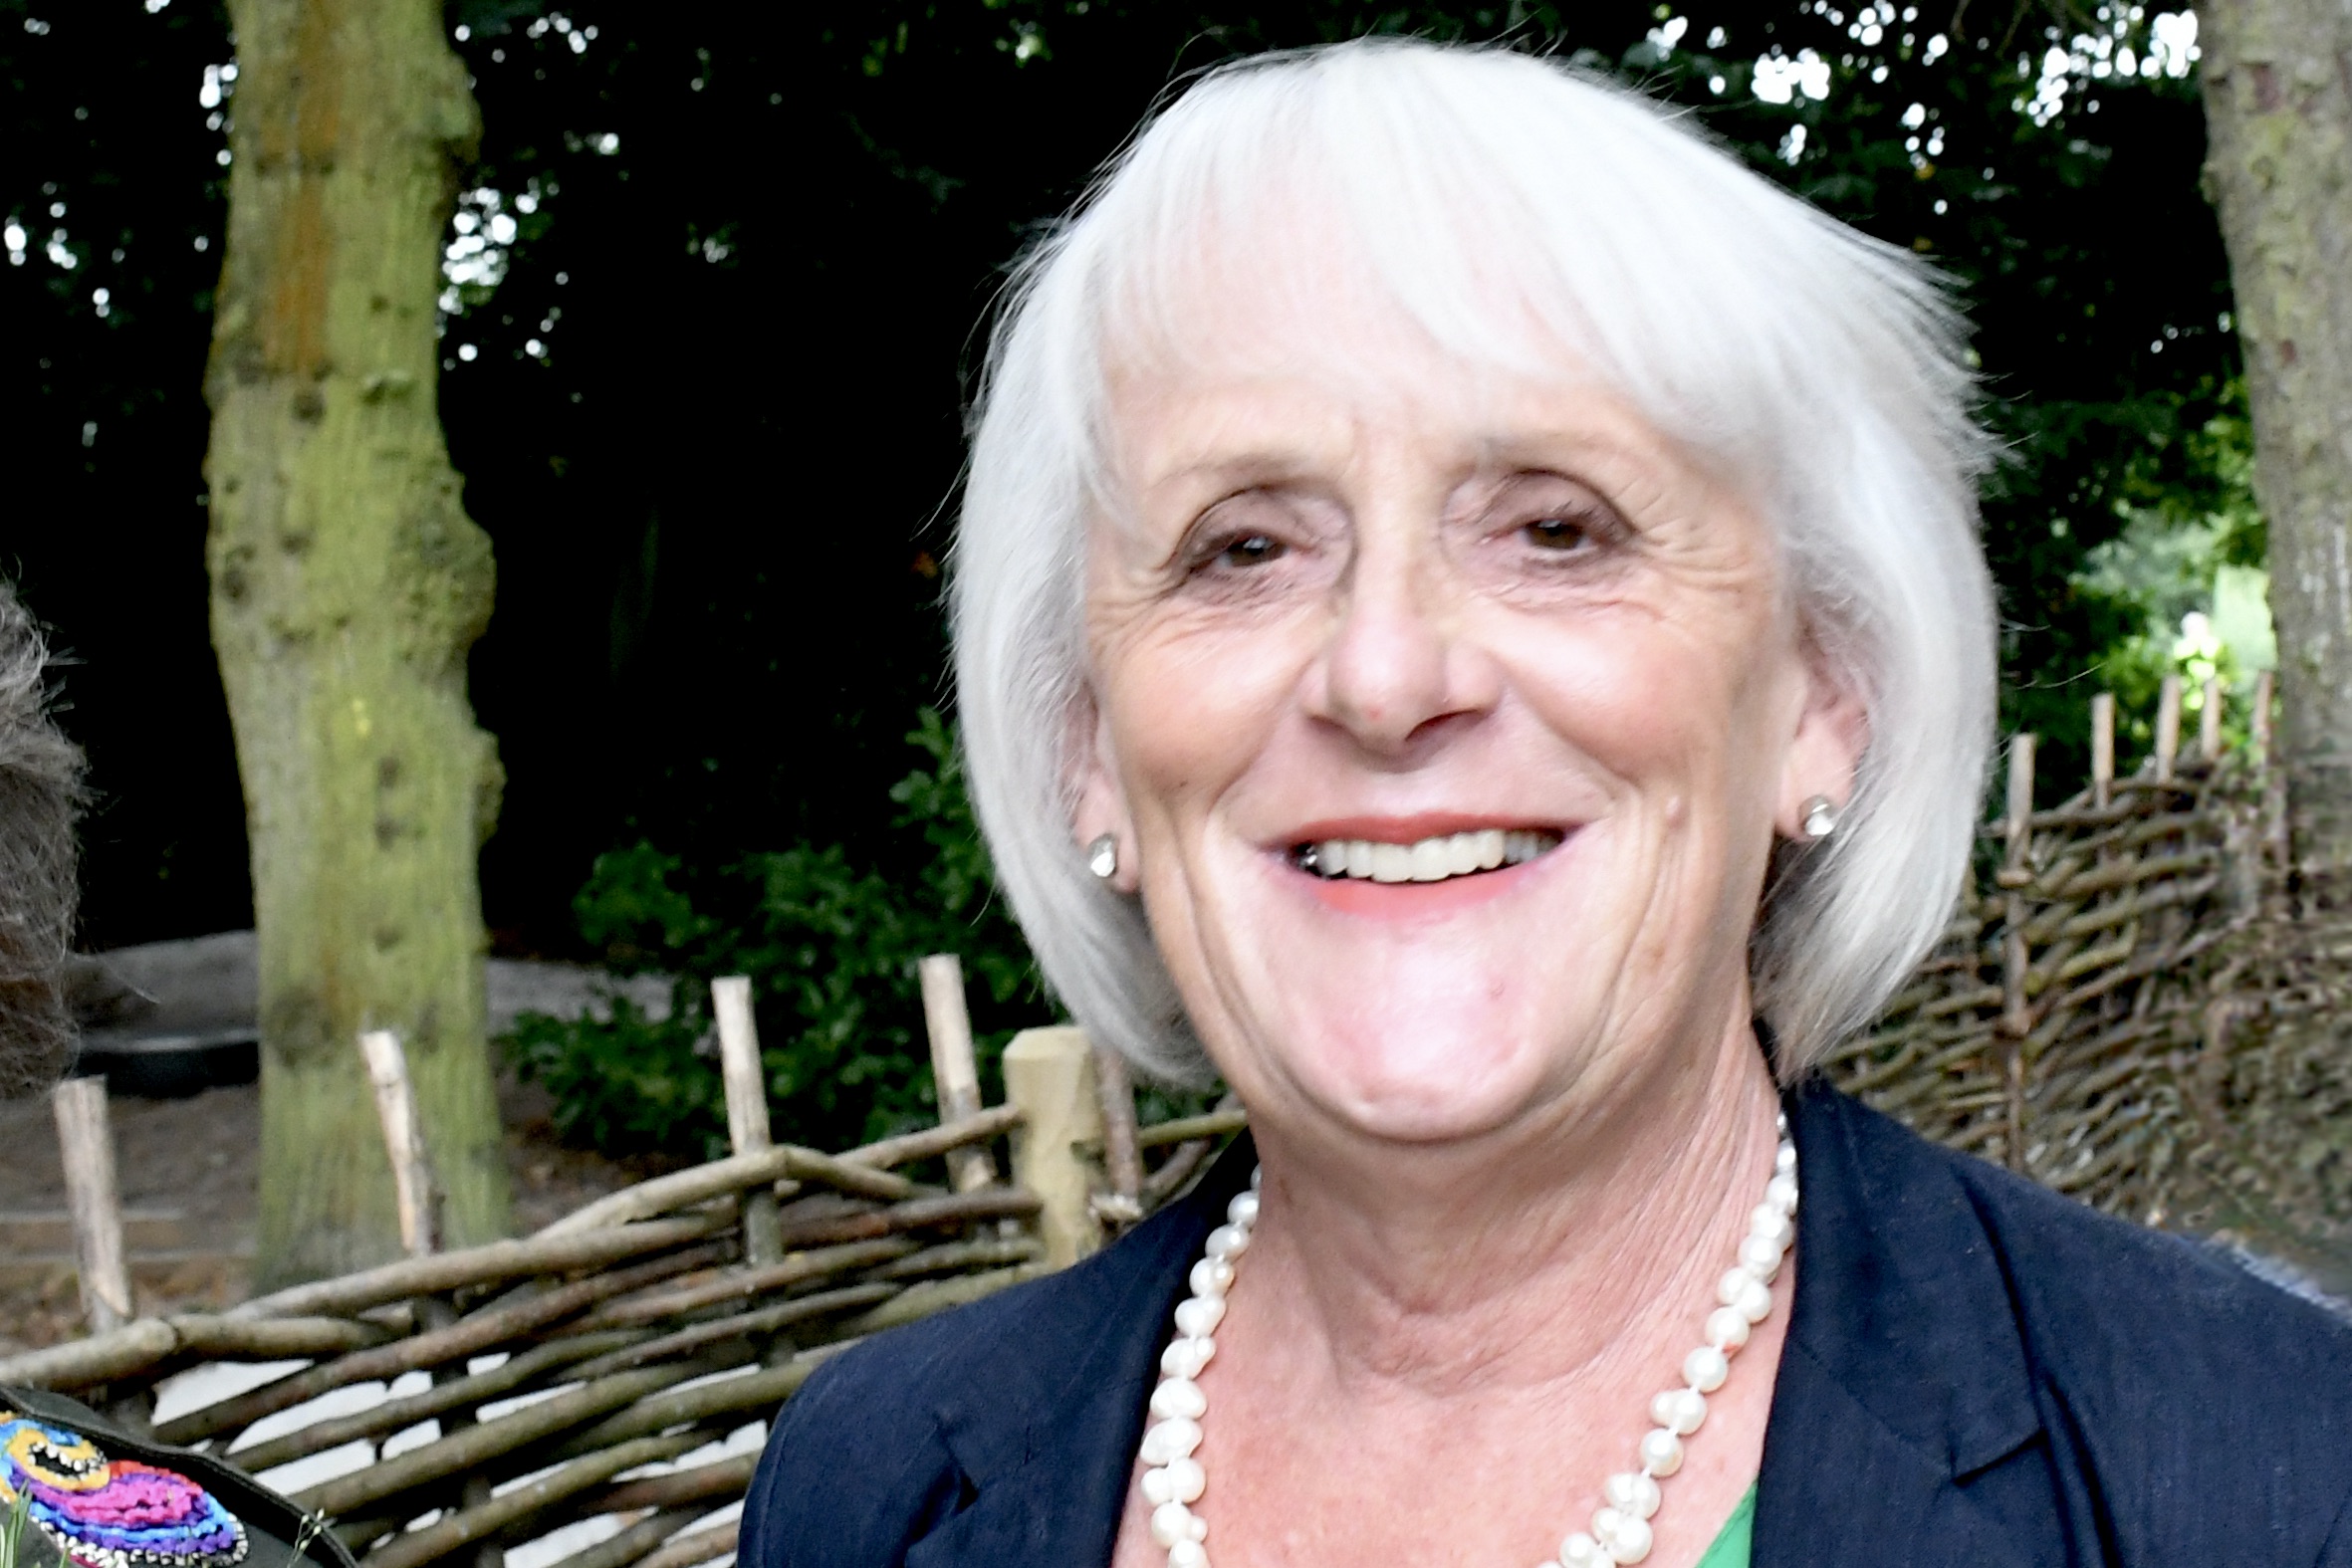 councillor Susan Hobson